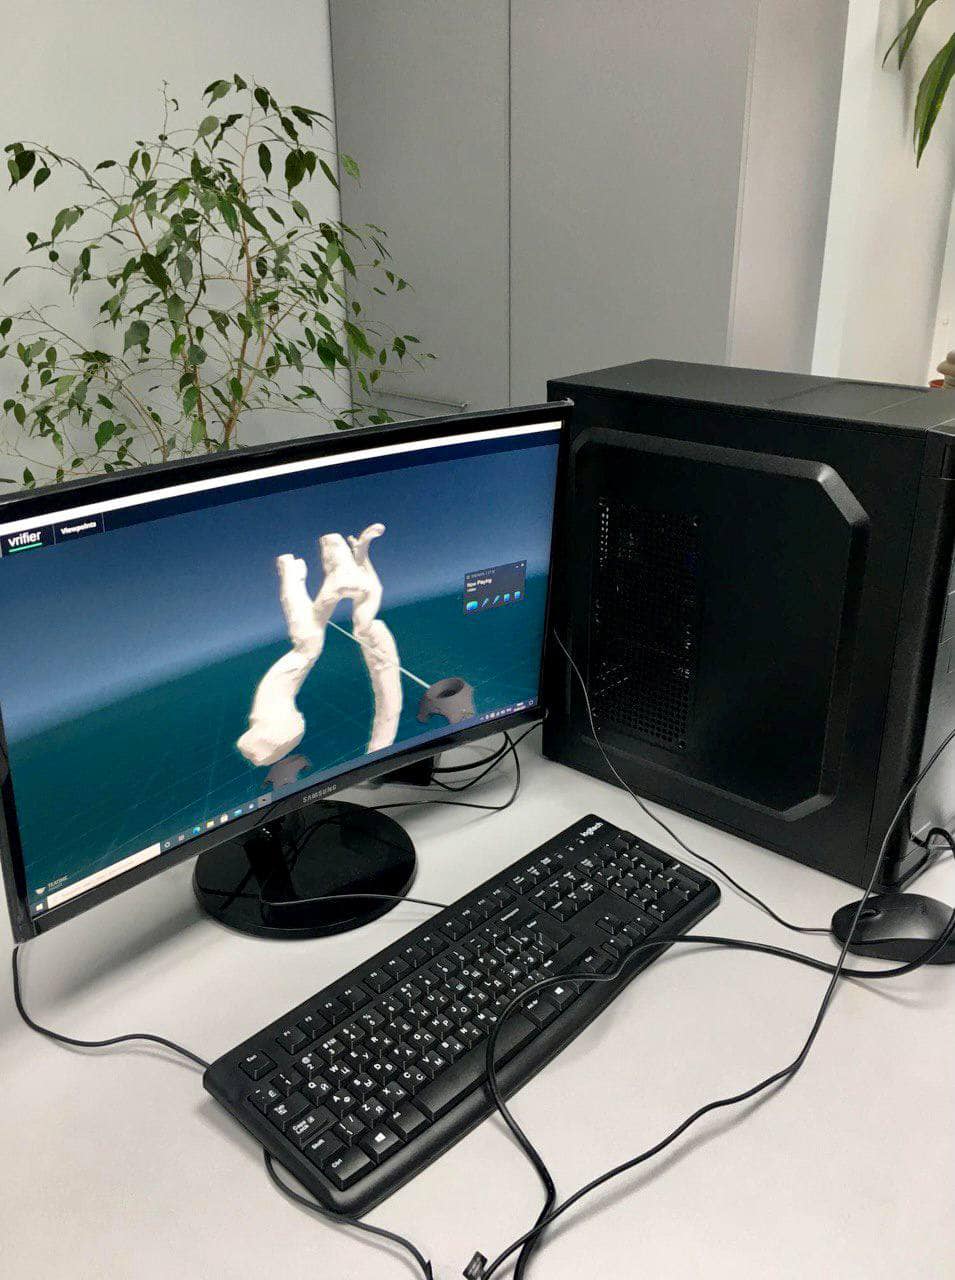 Українські хірурги провели першу операцію за допомогою віртуальної реальності